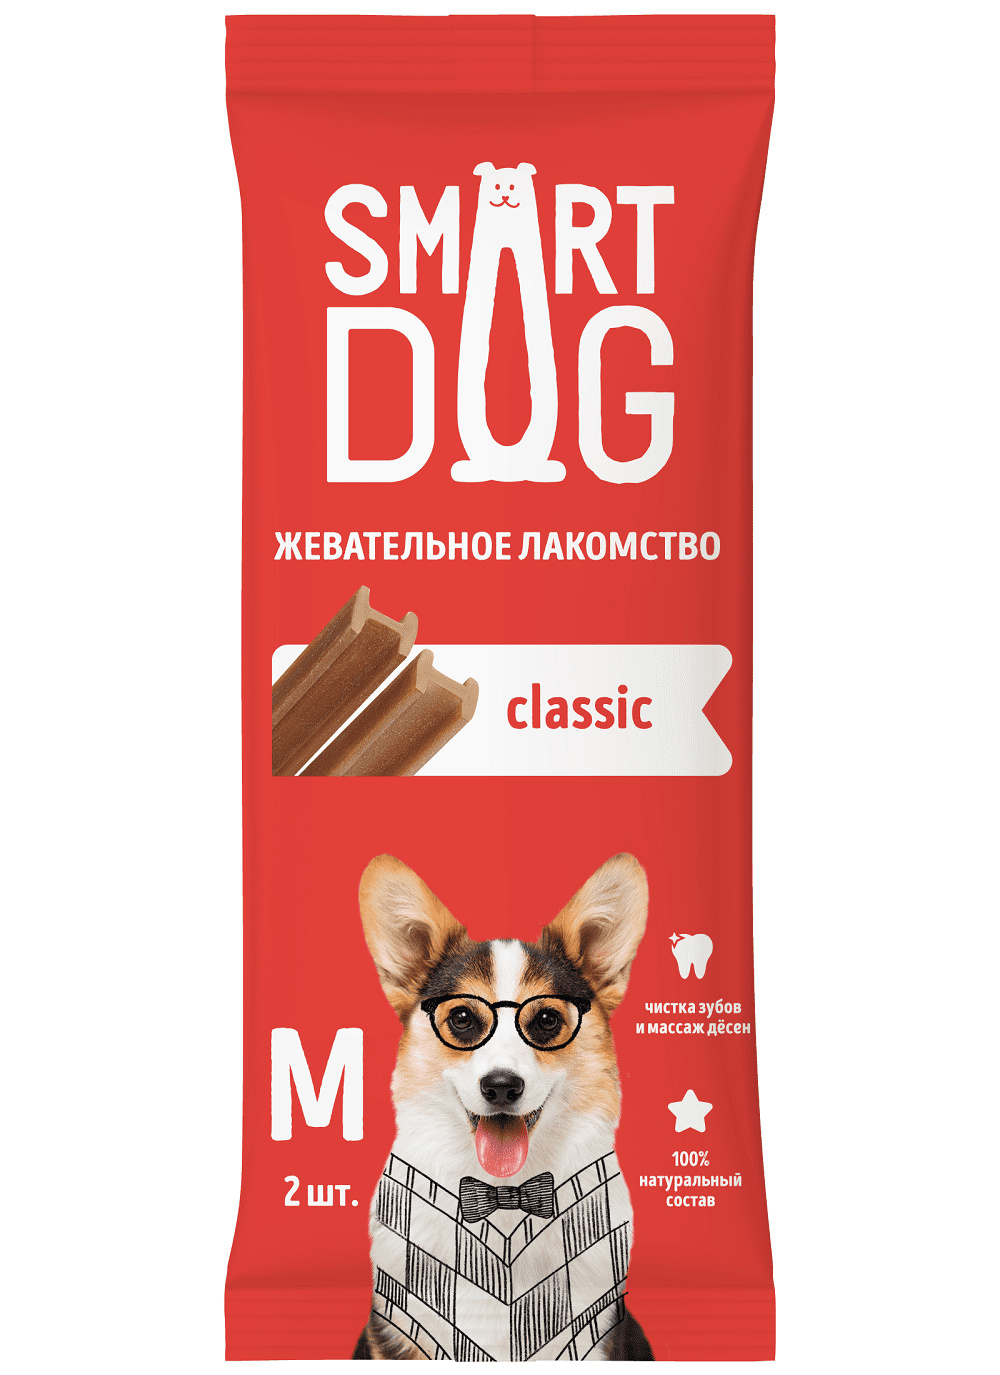 Smart Dog лакомства жевательное лакомство с витаминами и минералами для собак и щенков (S)